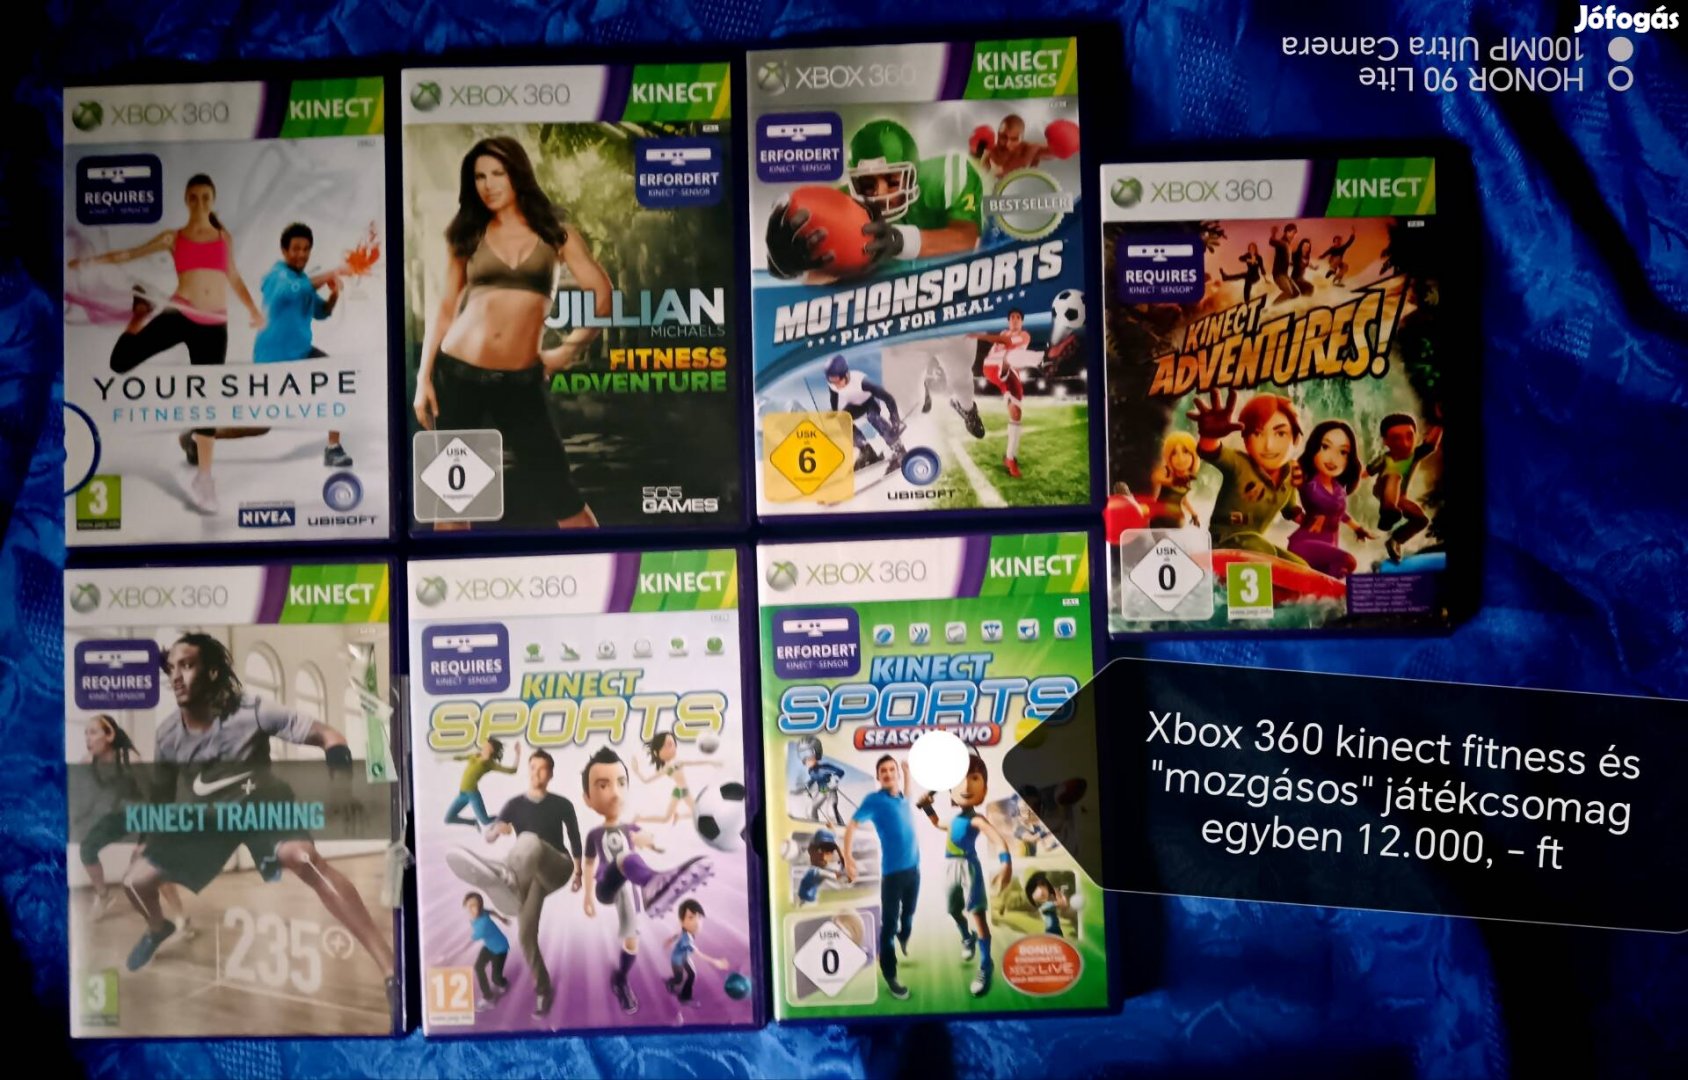 Xbox 360 fitness és mozgásos kinect játékcsomag 